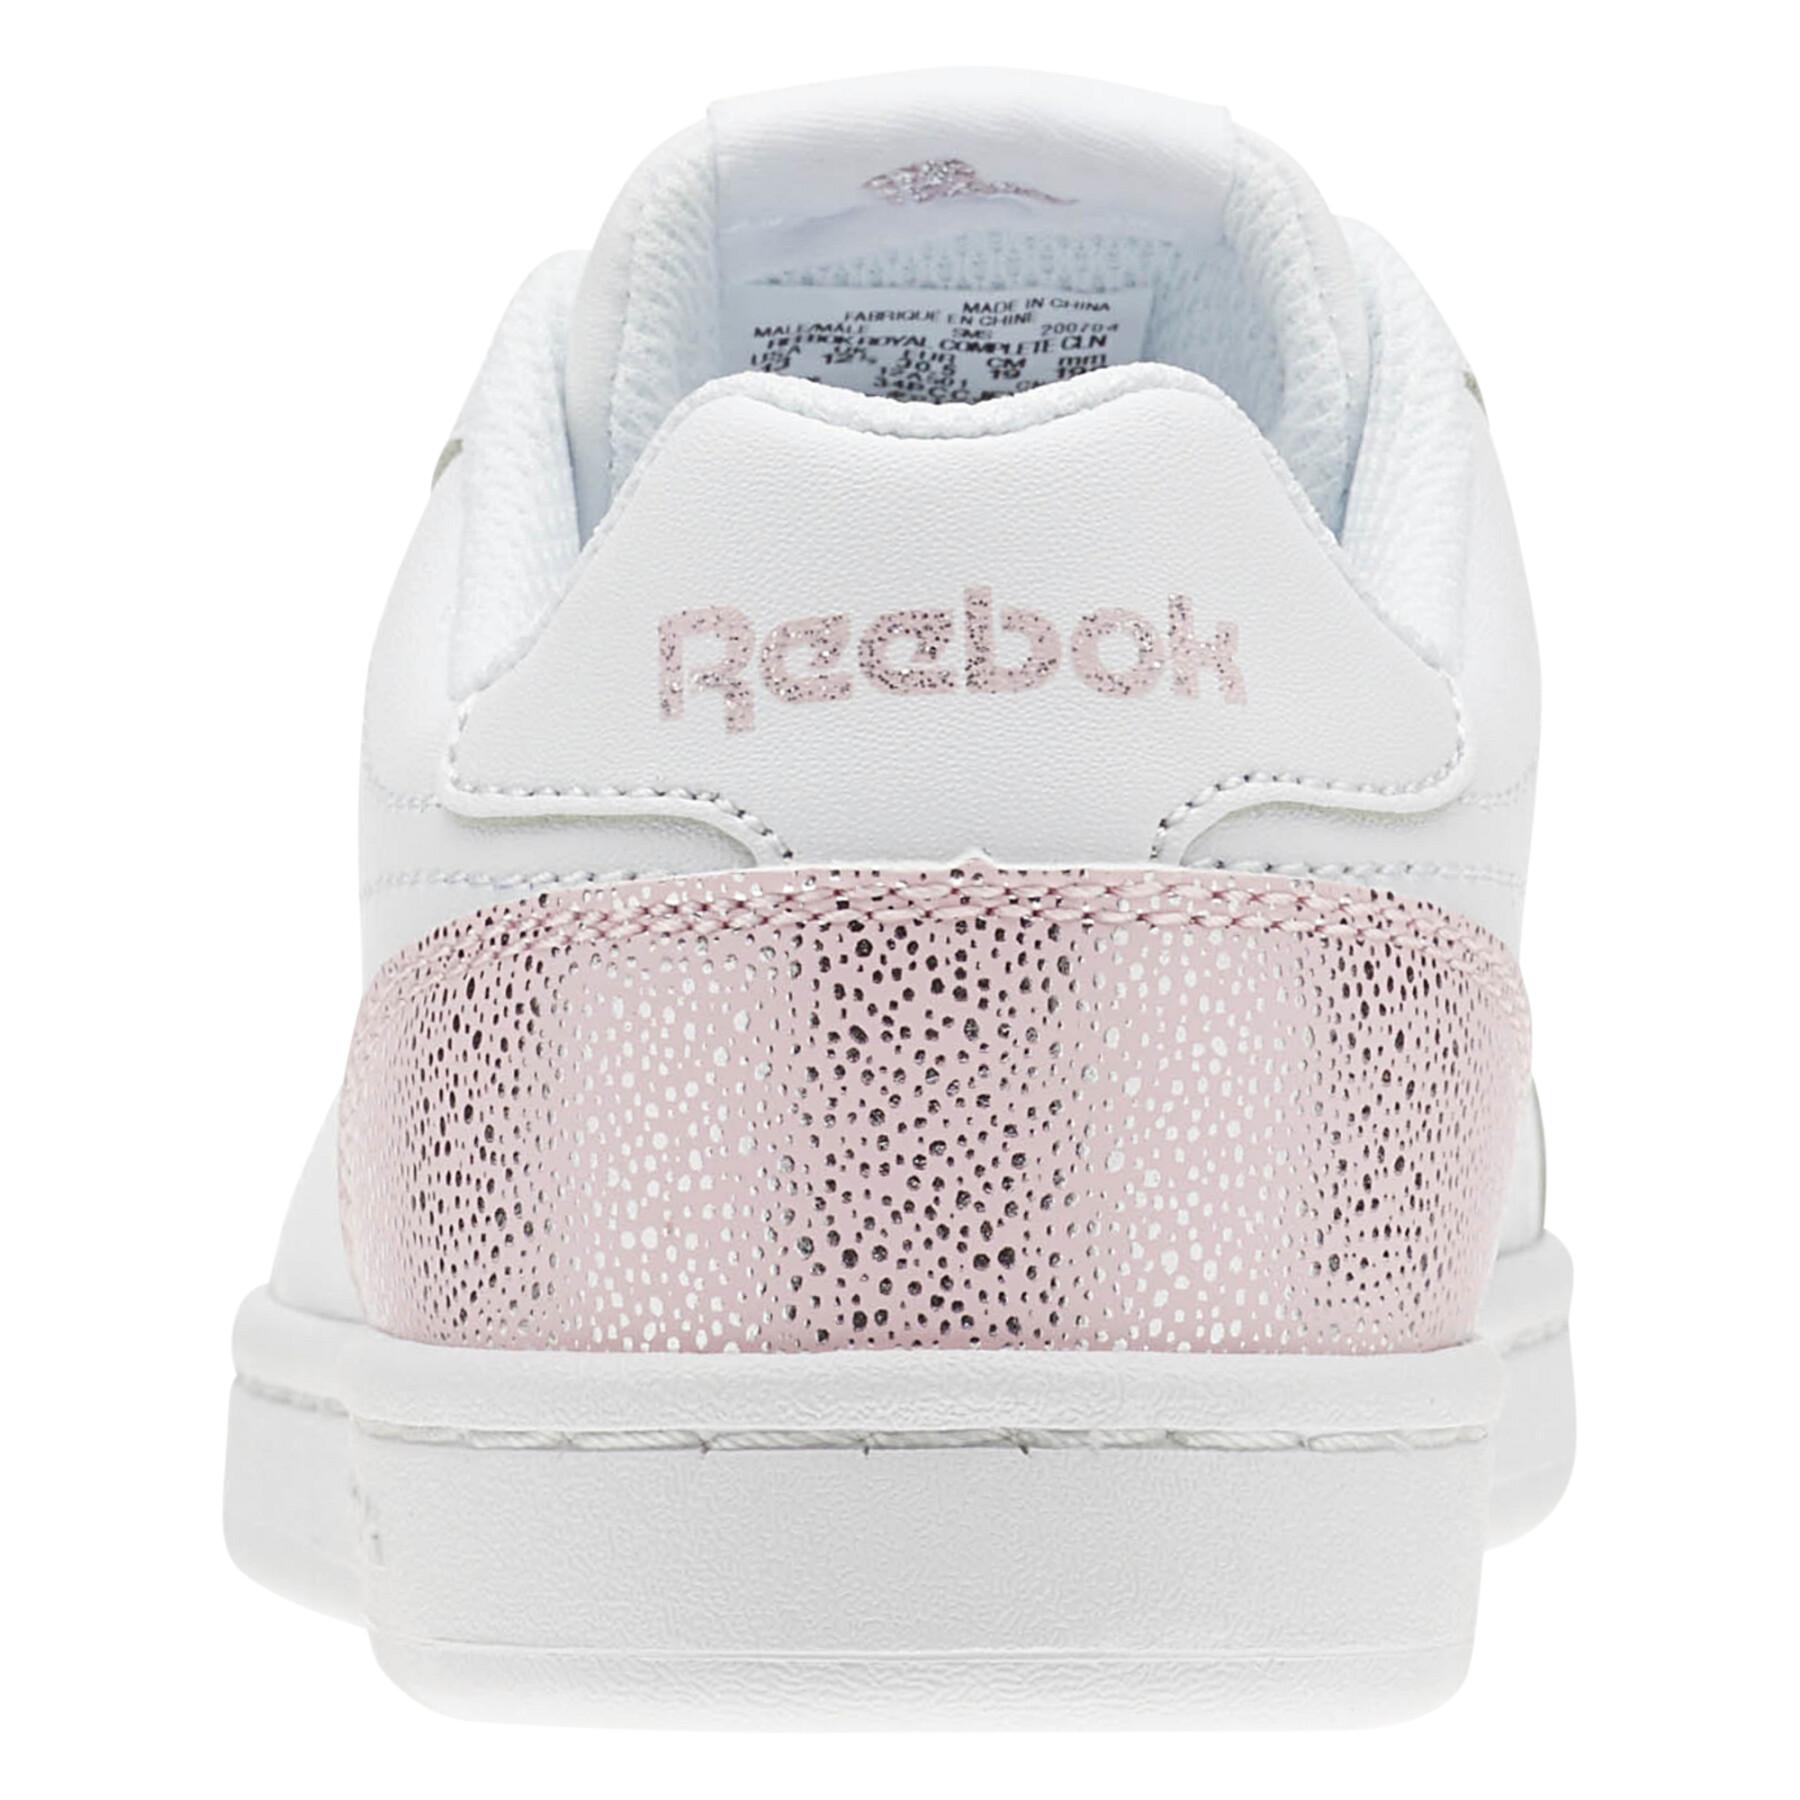 Zapatillas de deporte para mujeres niño Reebok Royal Complete Clean